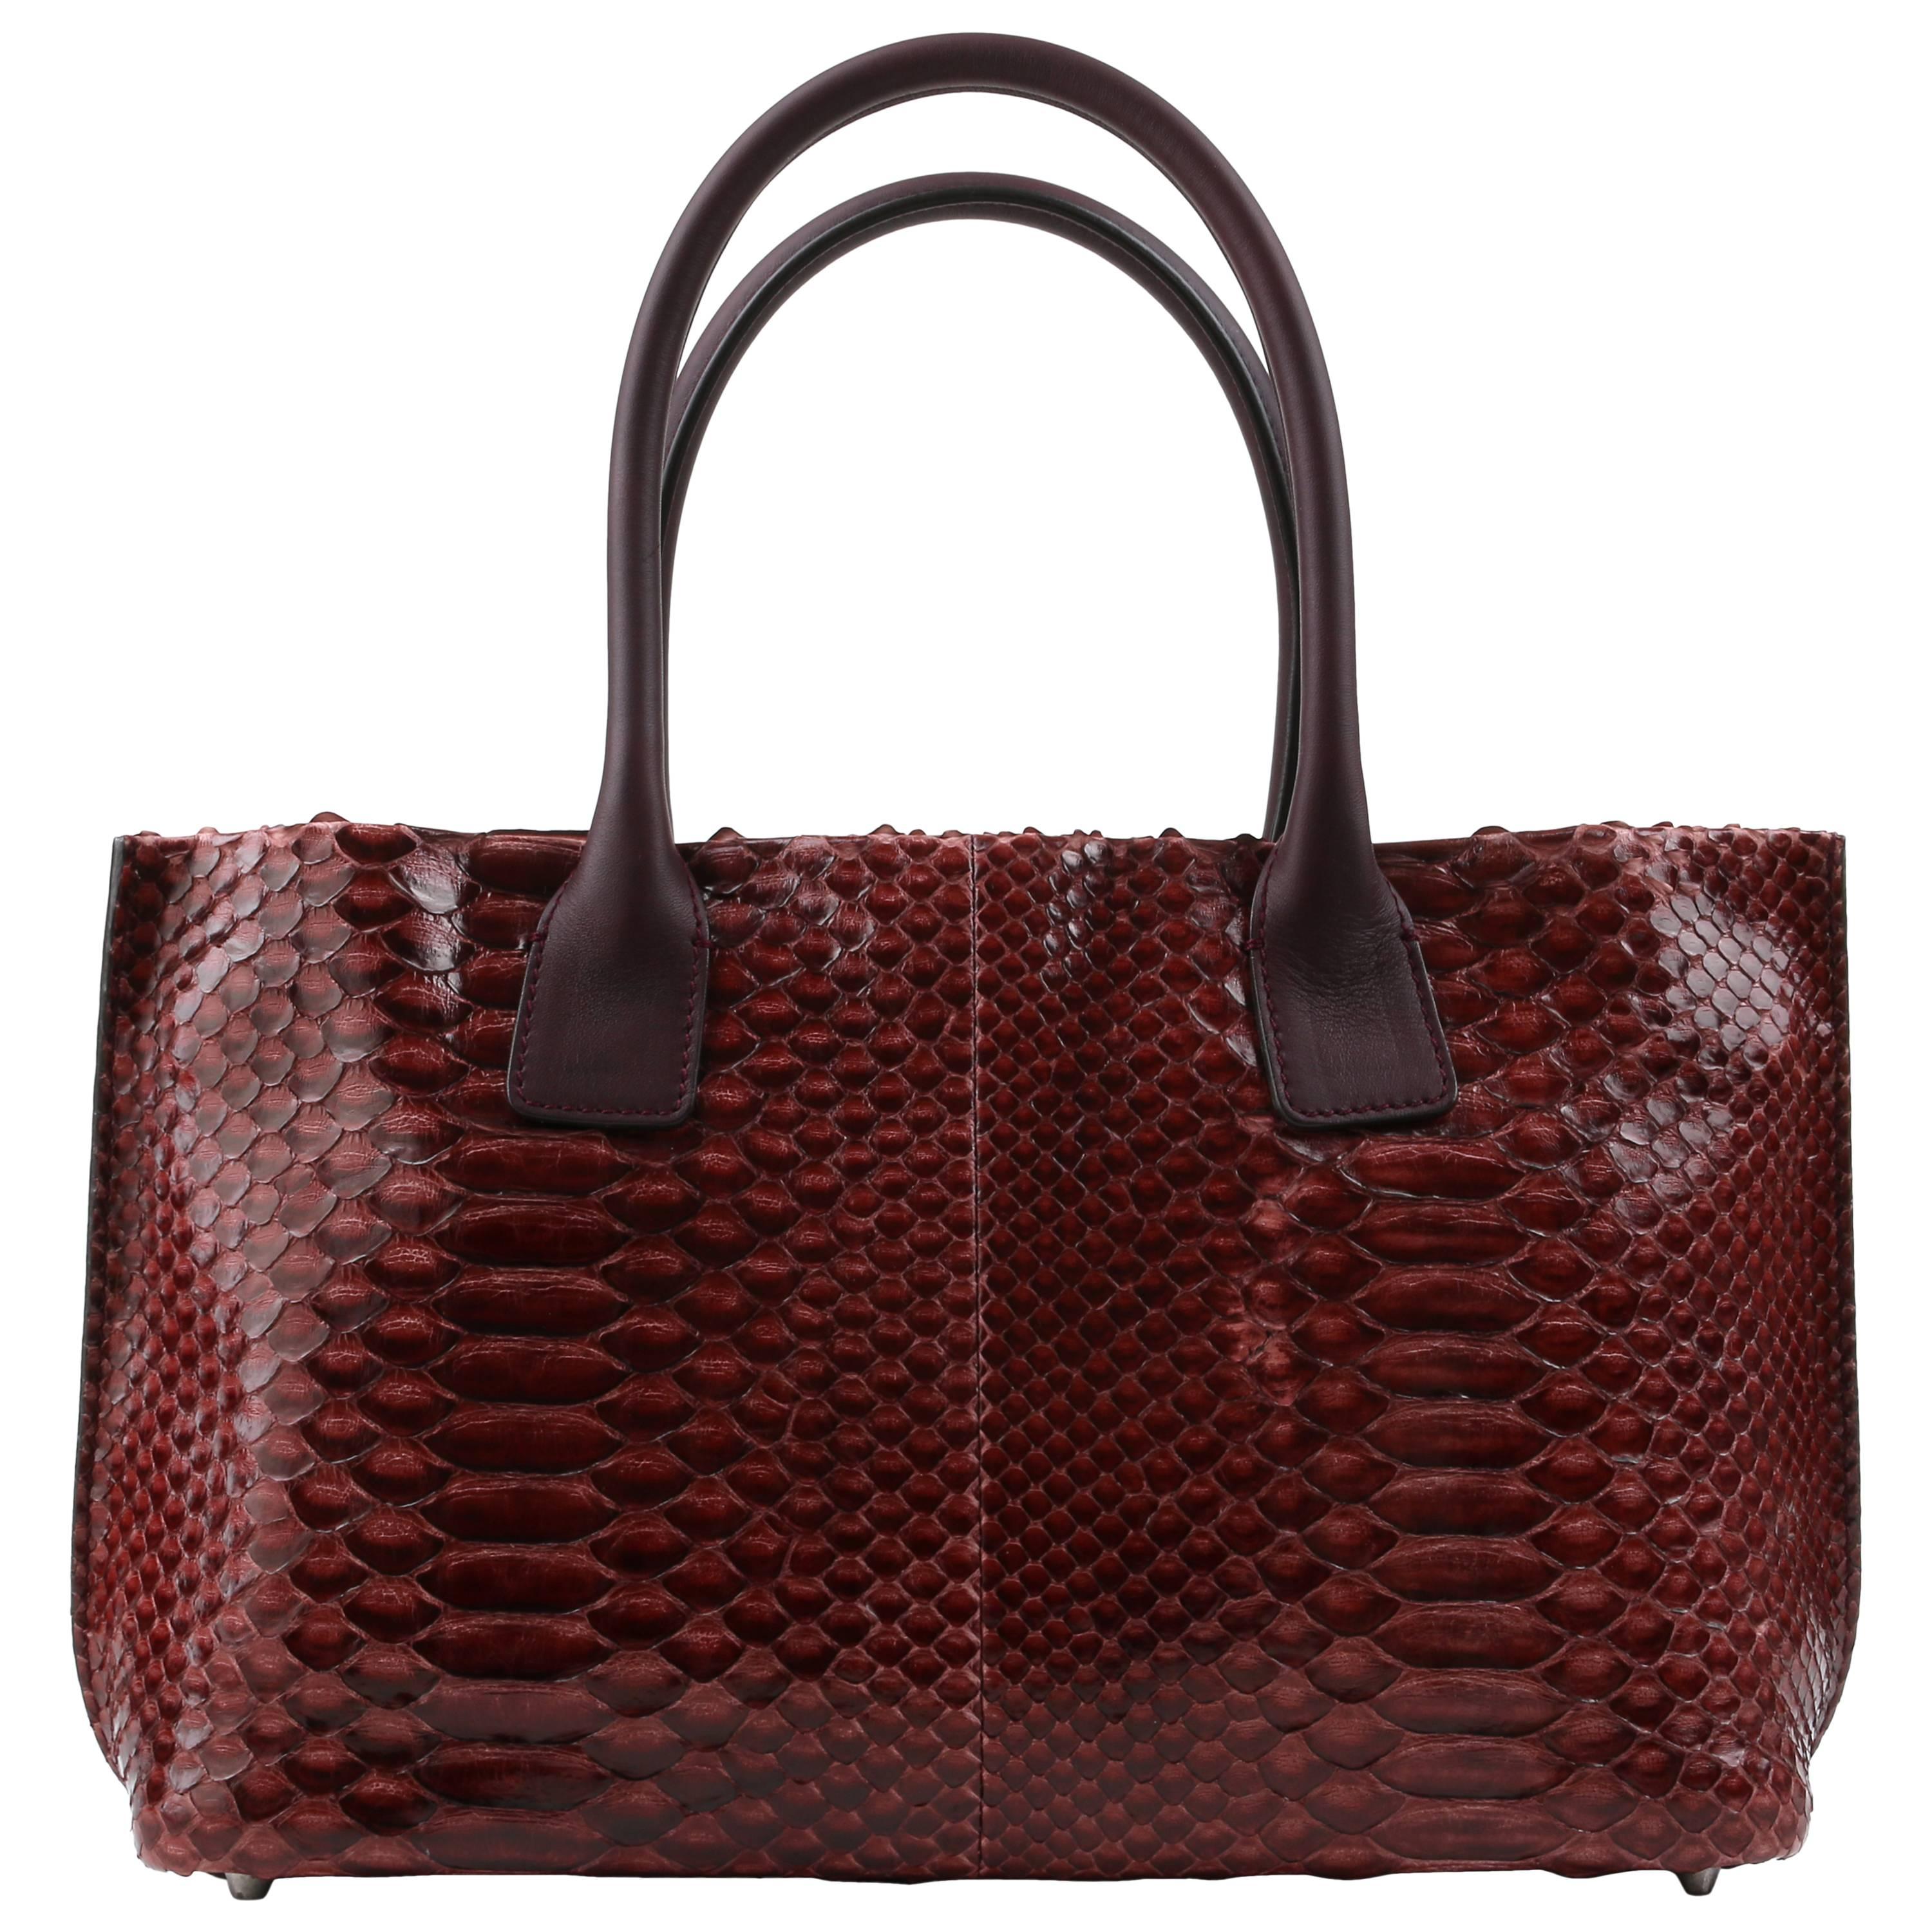 BRUNELLO CUCINELLI Burgundy Red Genuine Python Snakeskin Satchel Handbag Purse